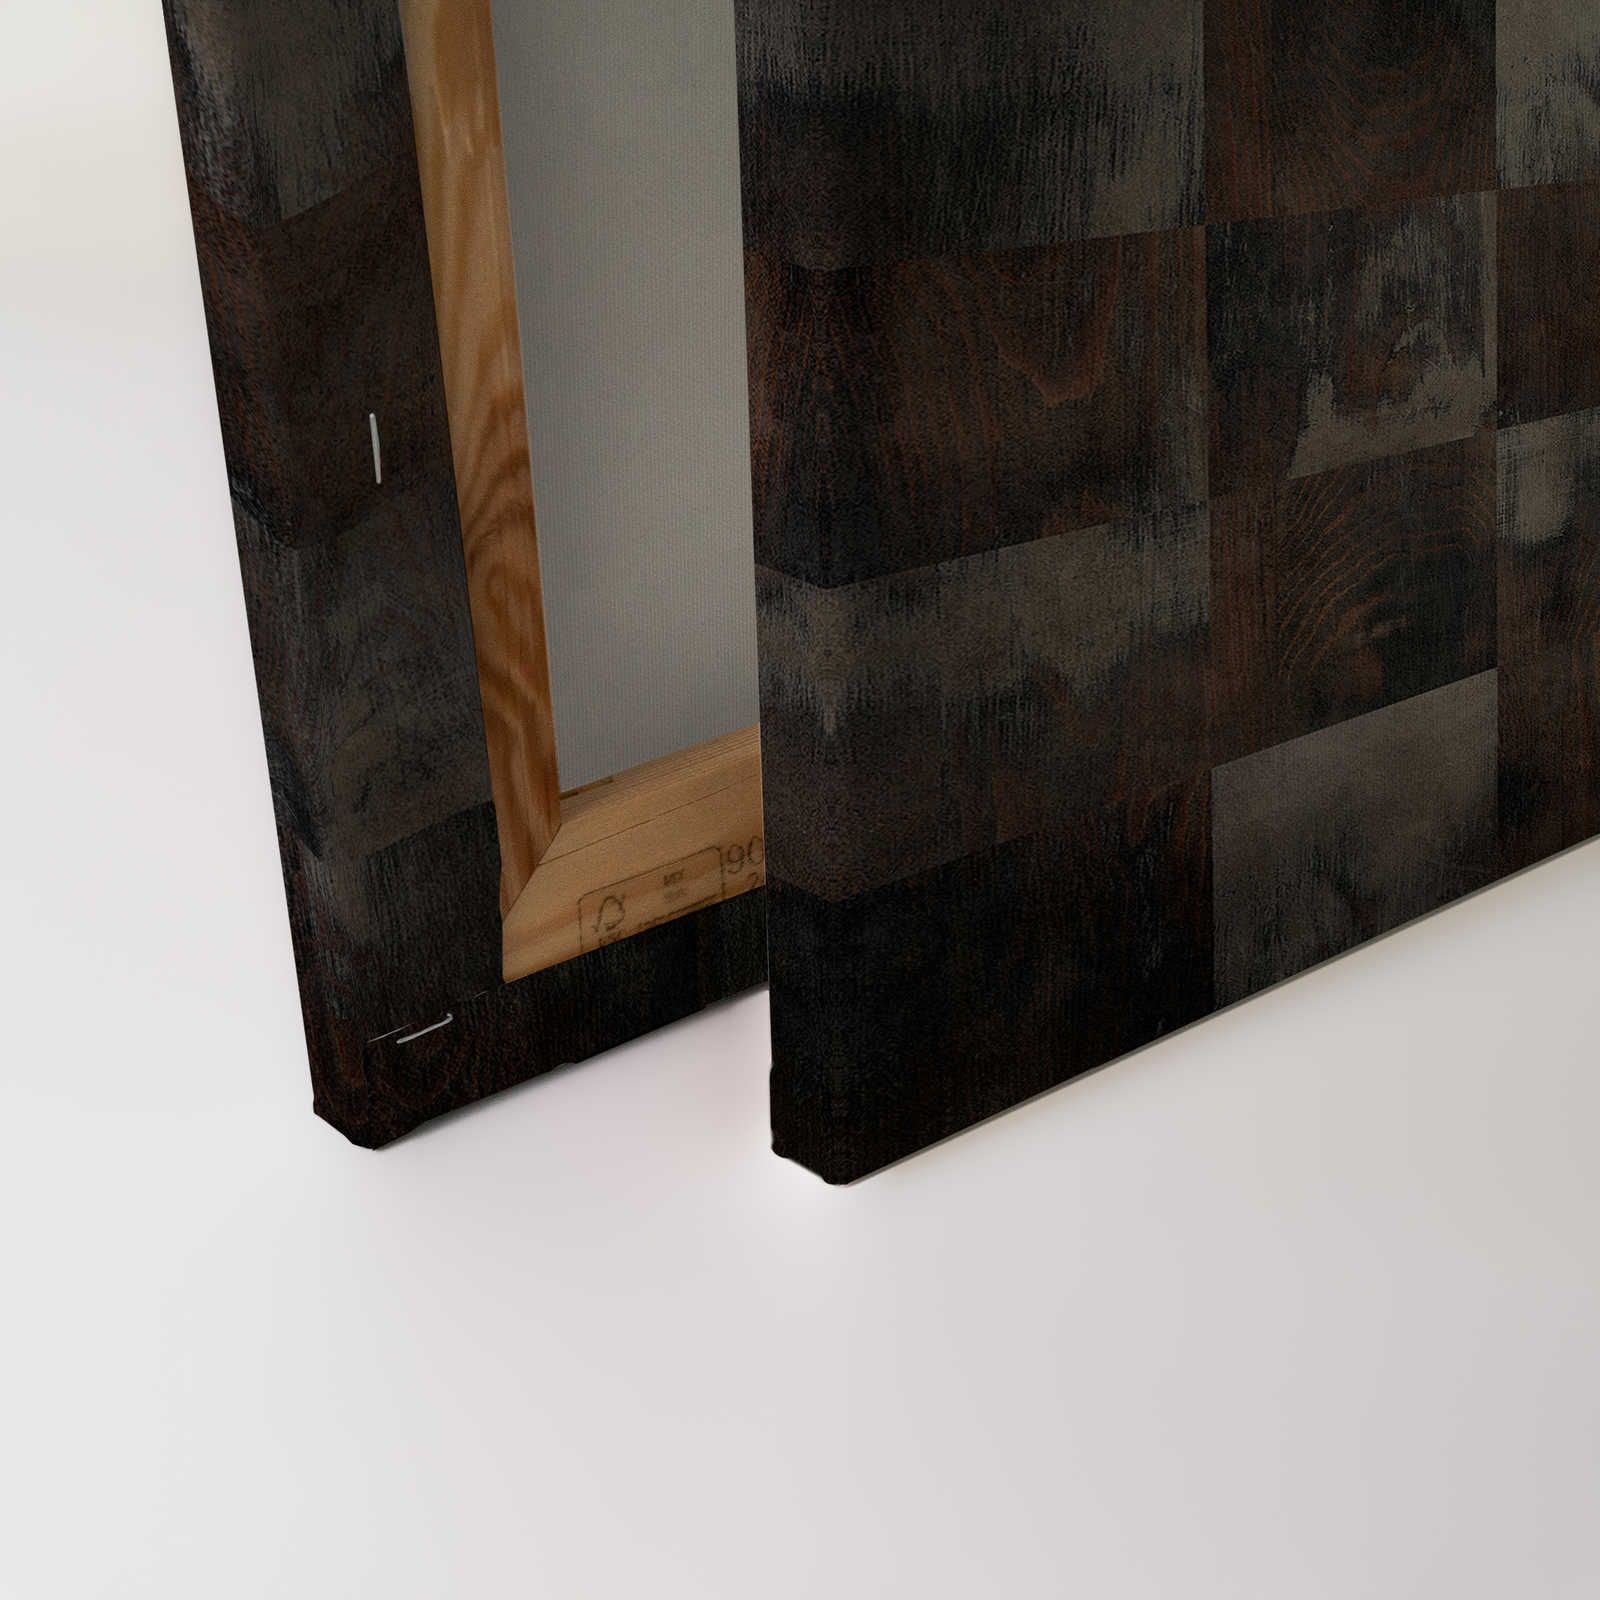             Fabbrica 2 - Tela effetto legno con motivo a scacchiera nell'aspetto usato - 0,90 m x 0,60 m
        